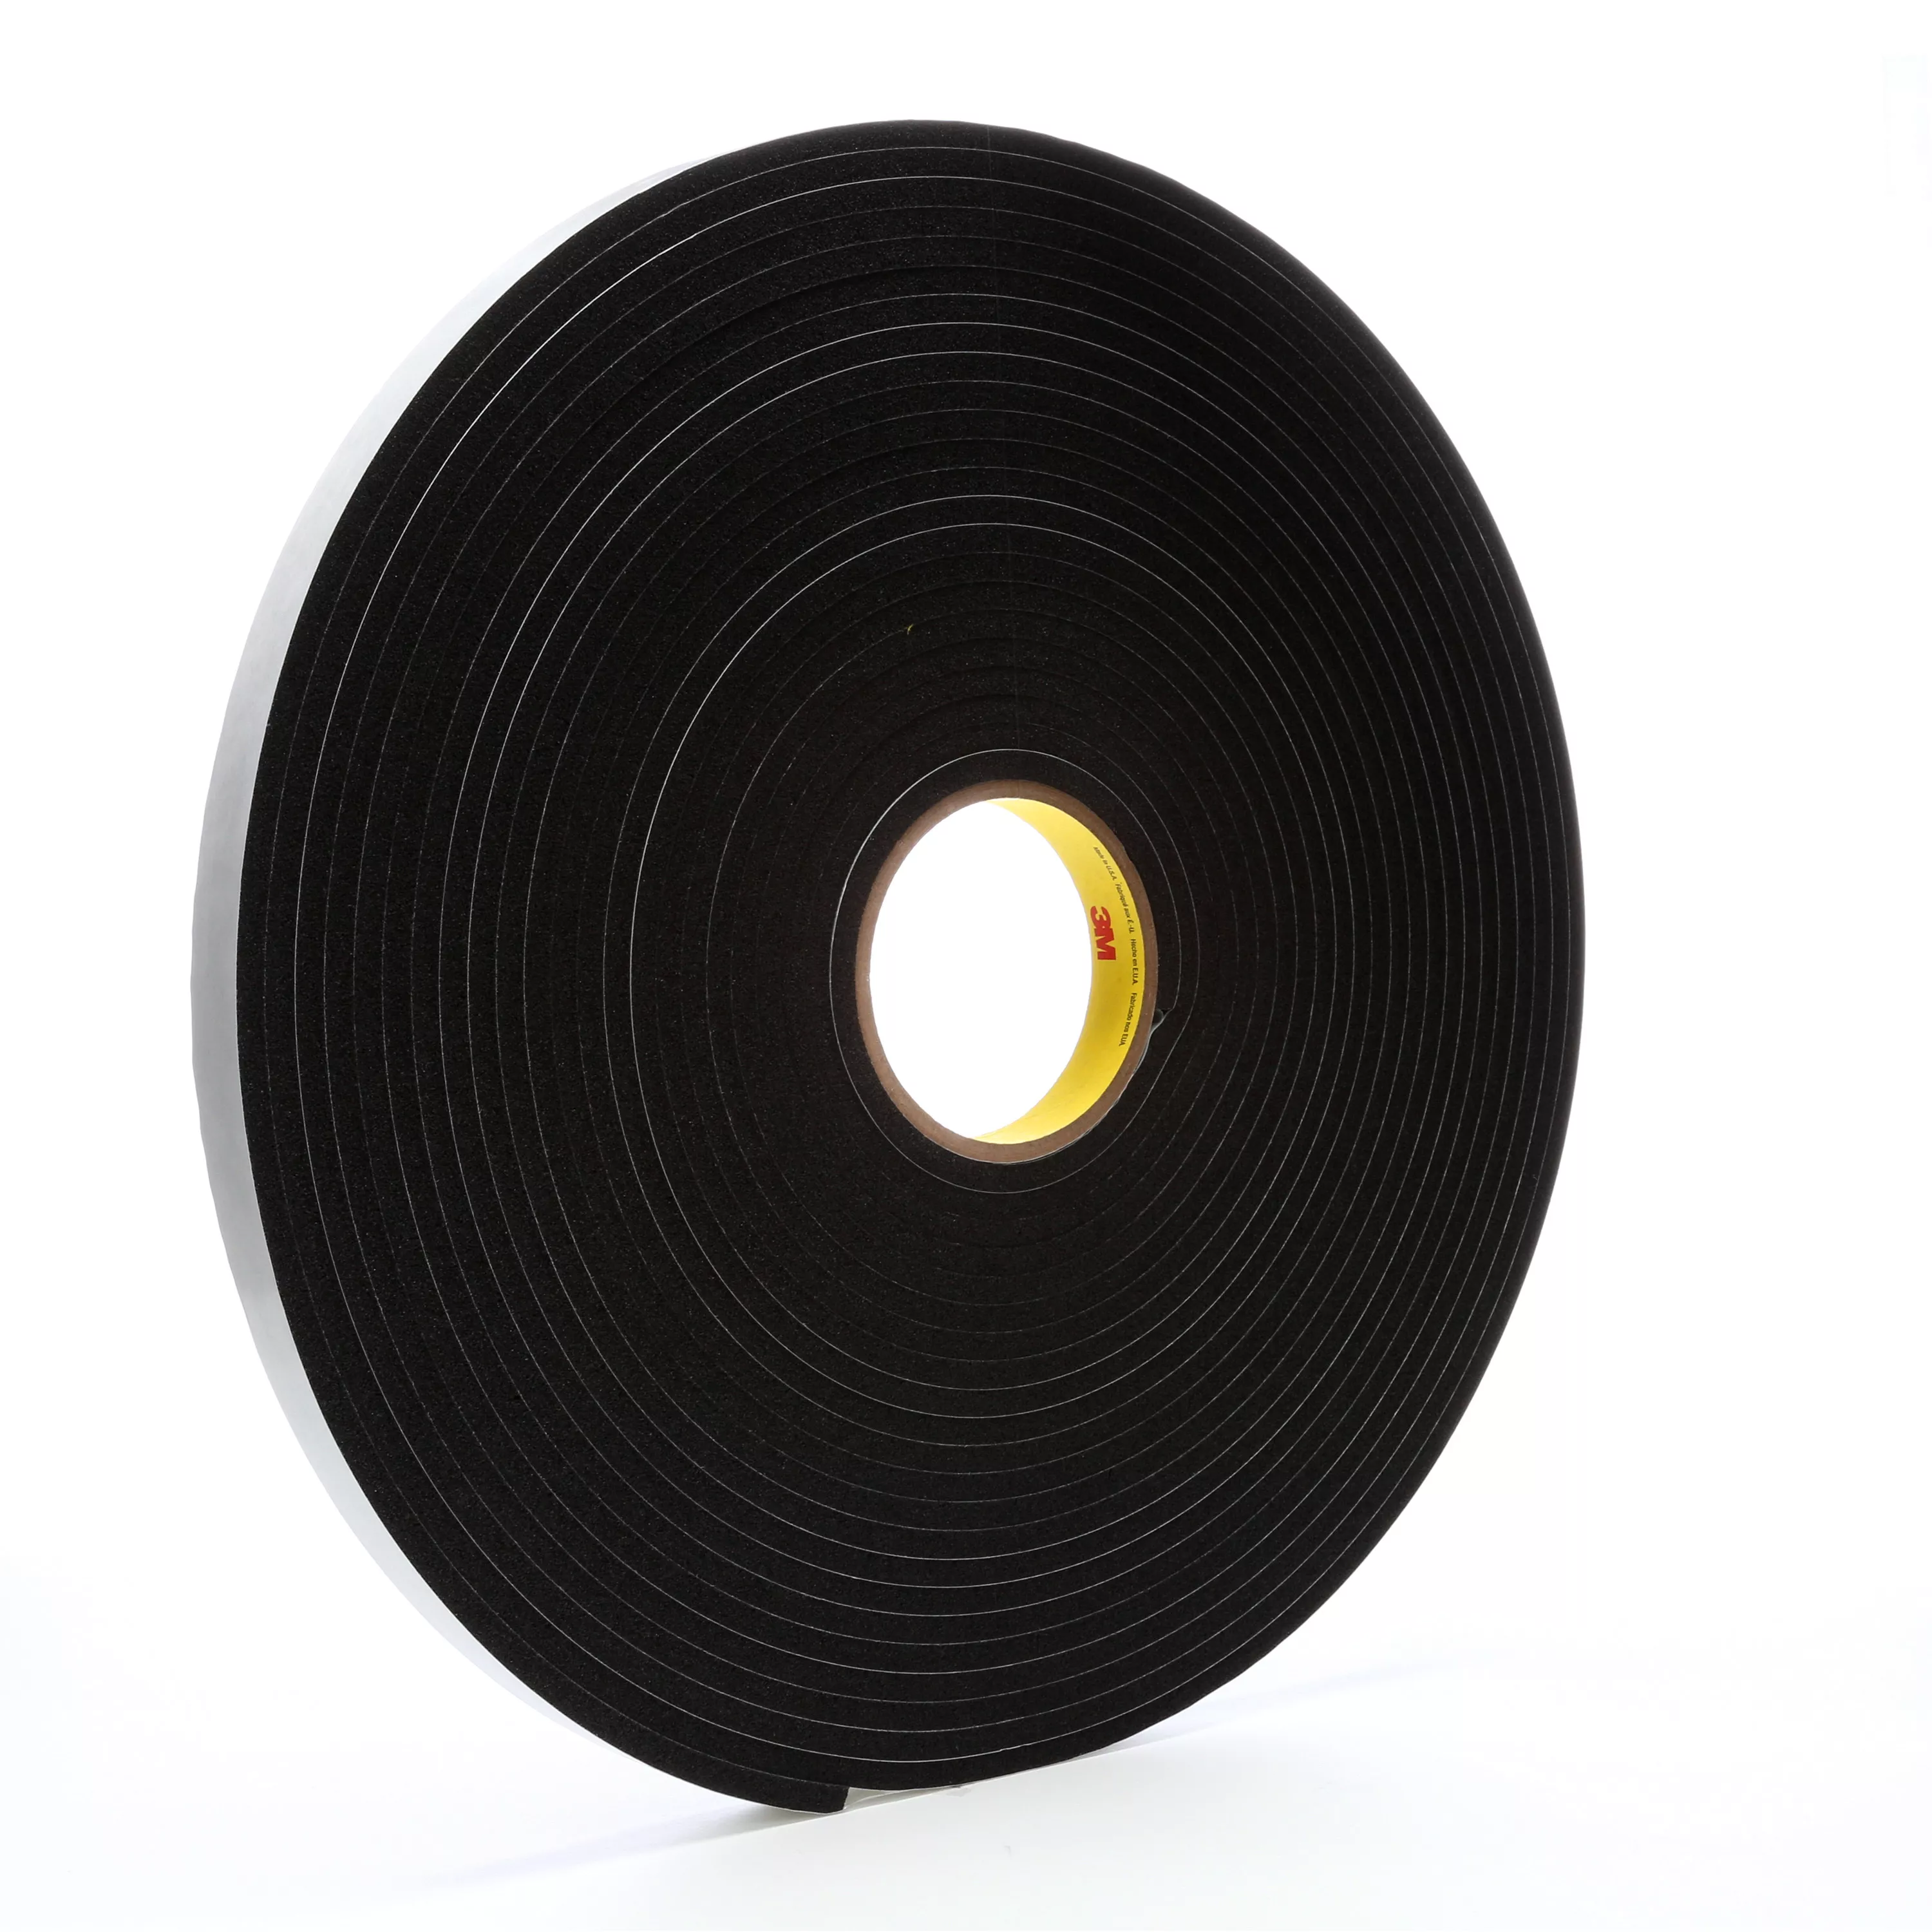 3M™ Vinyl Foam Tape 4504, Black, 3/4 in x 18 yd, 250 mil, 12 Roll/Case